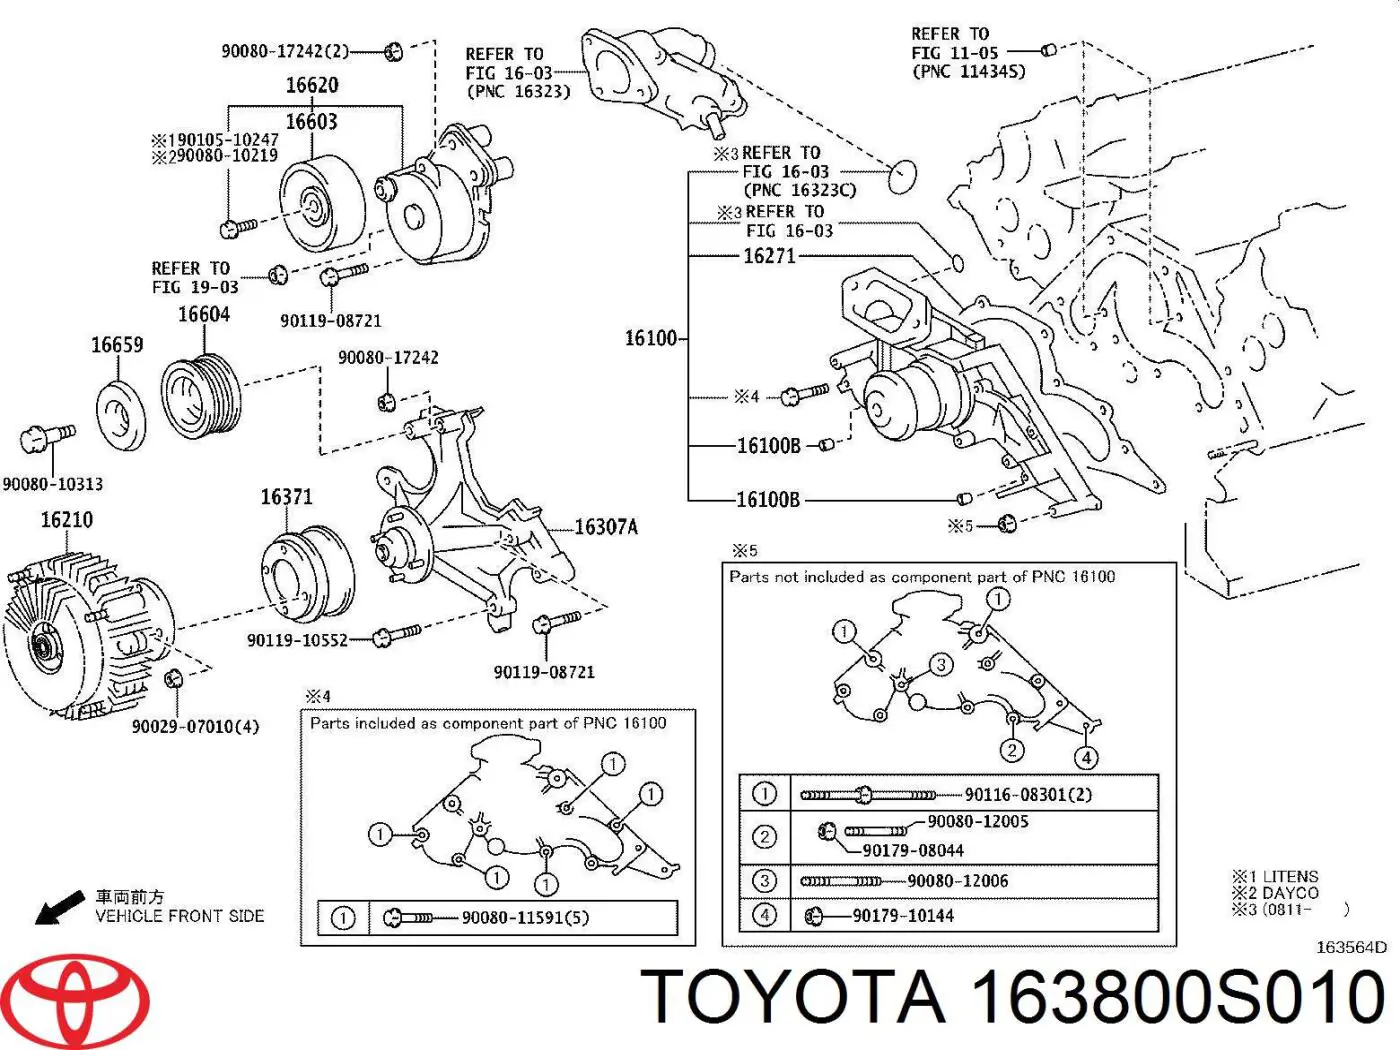 163800S010 Toyota